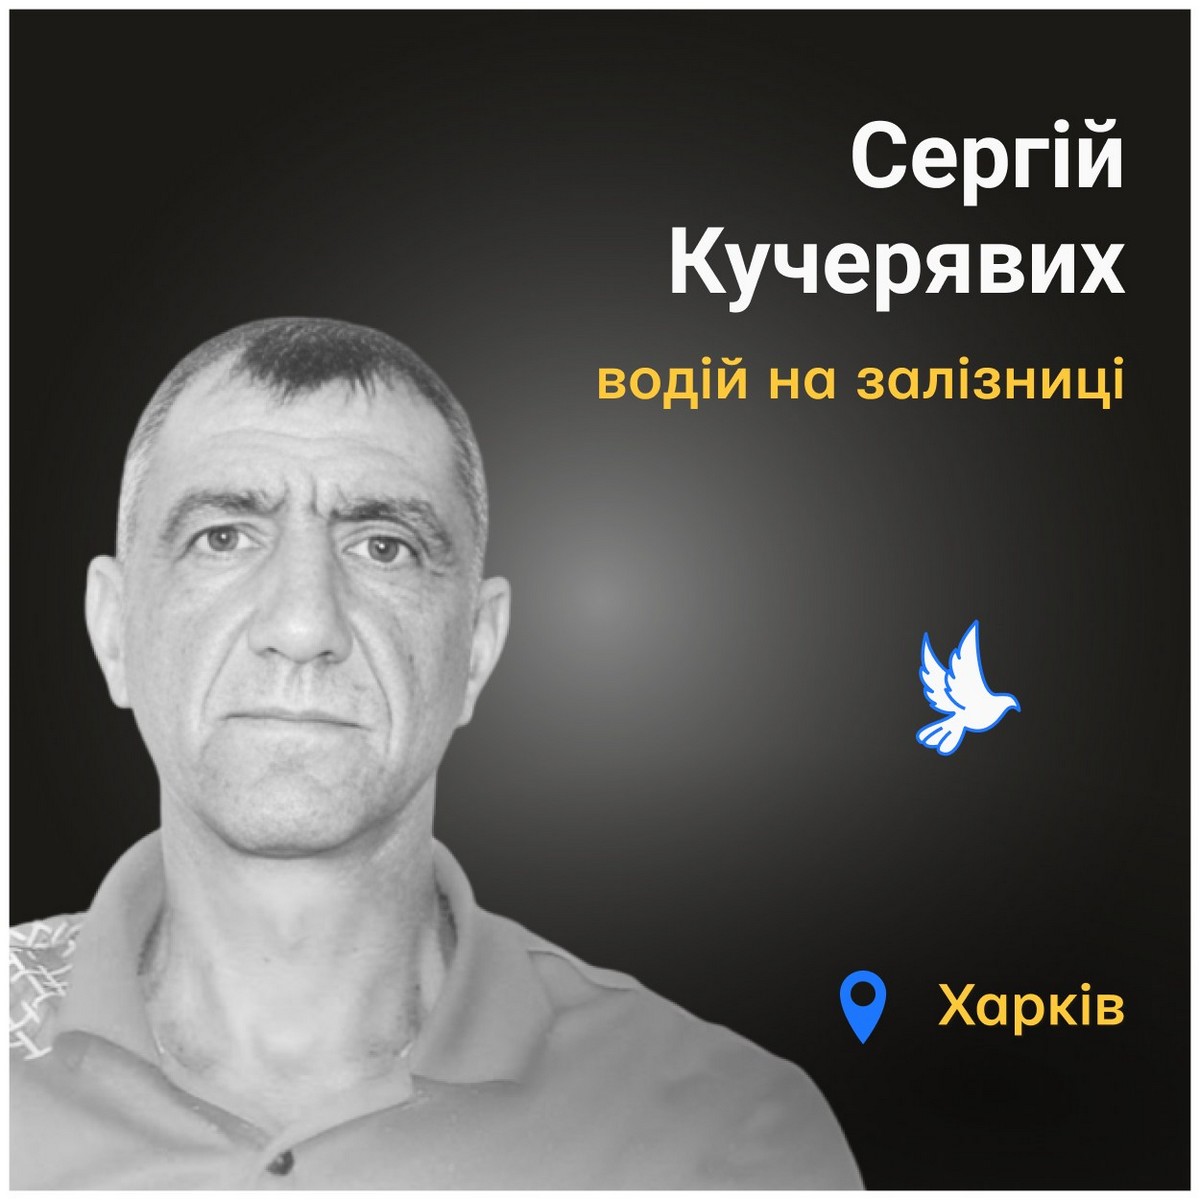 Меморіал: вбиті росією. Сергій Кучерявих, 49 років, Харків, квітень